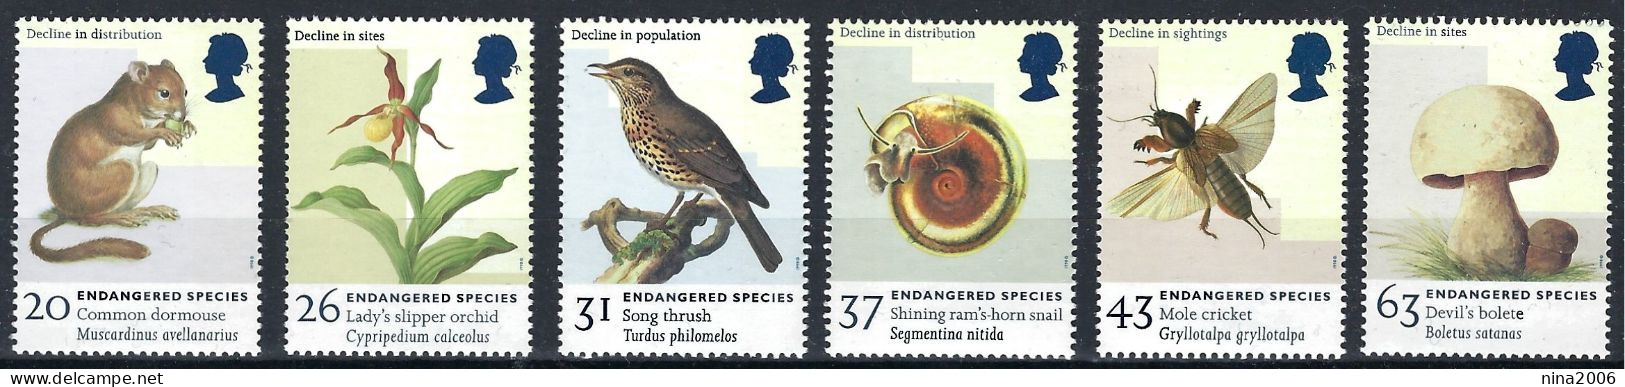 Gran Bretagna 1998 Animali E Piante In Pericolo / Großbritannien 1998 Gefährdete Tiere Und Pflanzen - Unused Stamps